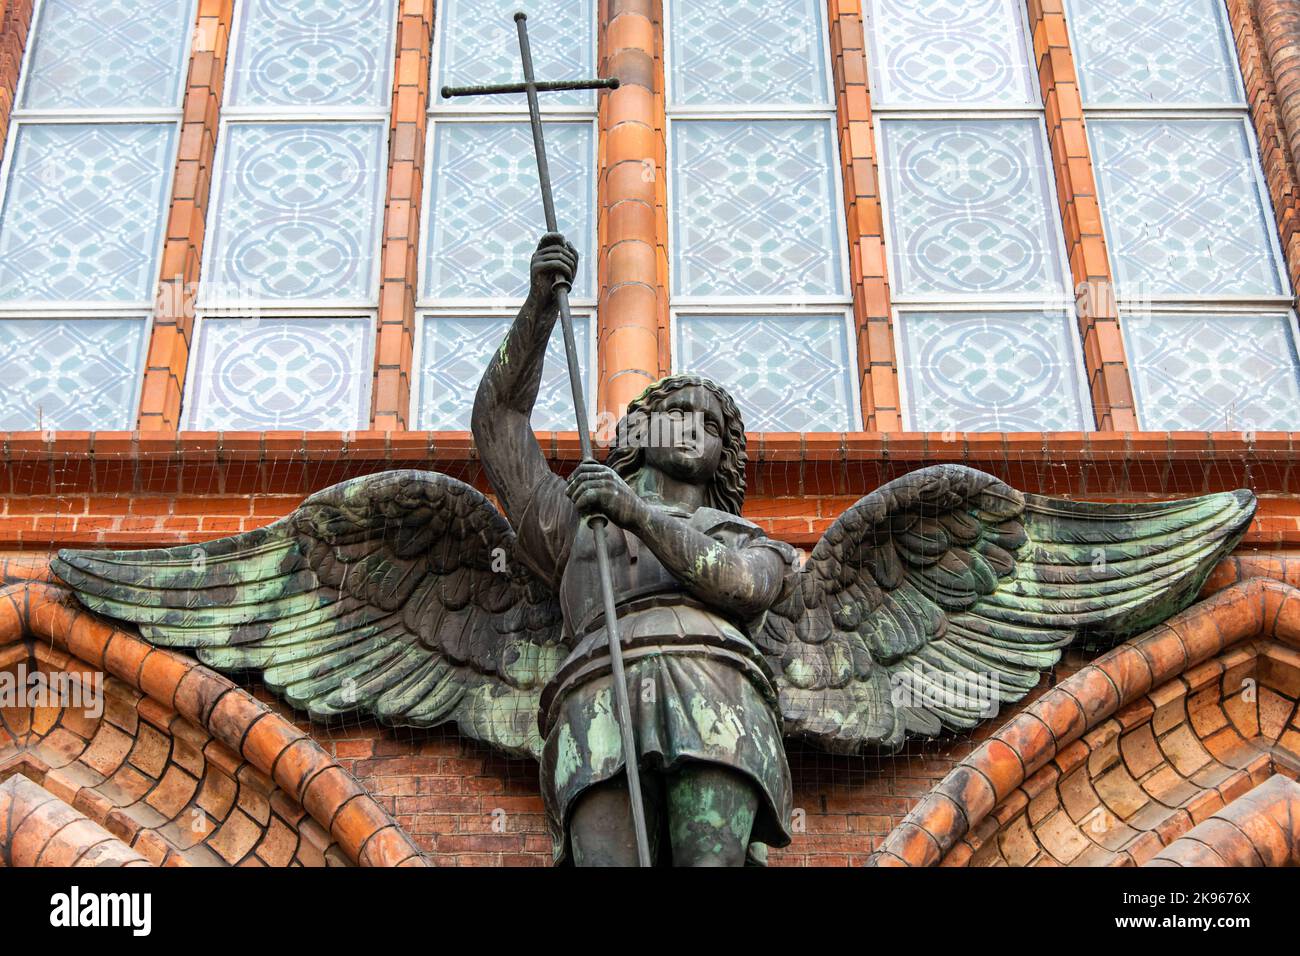 Statua dell'Arcangelo Michele uccidendo il serpente, dettagli esterni della chiesa cristiana. Tempio cattolico a Berlino, Germania, architettura gotica. Foto Stock